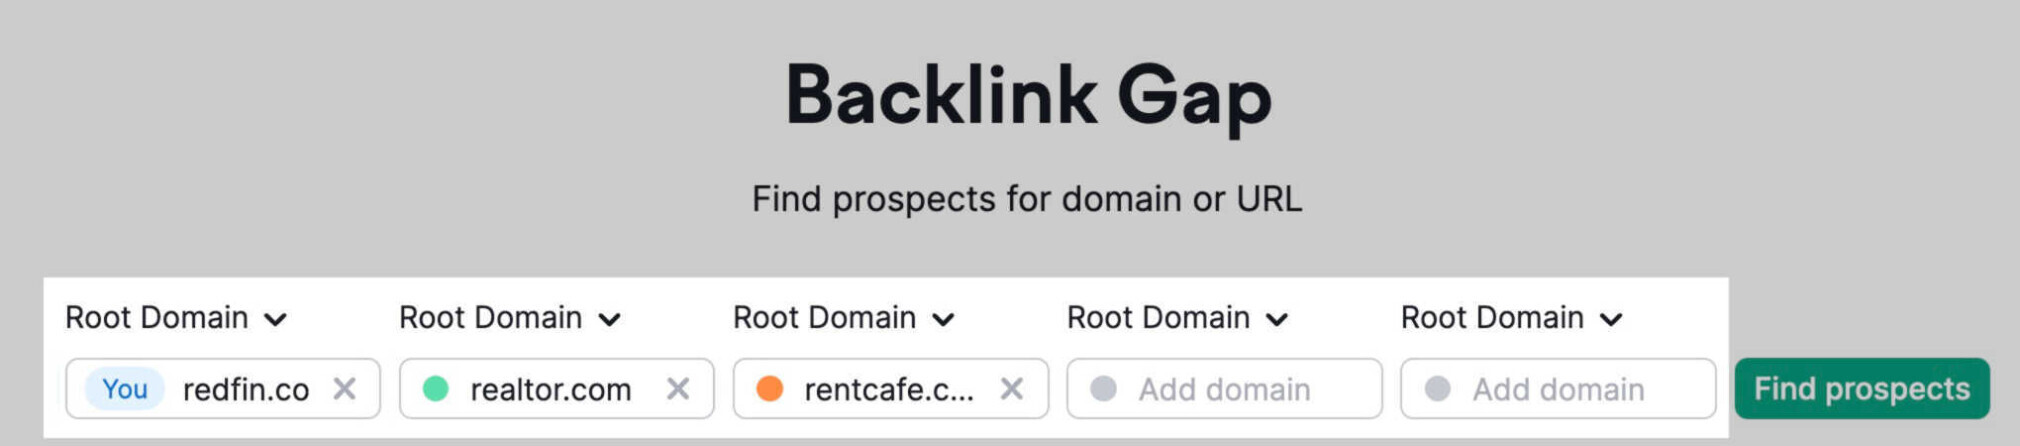 Backlink Gap setup